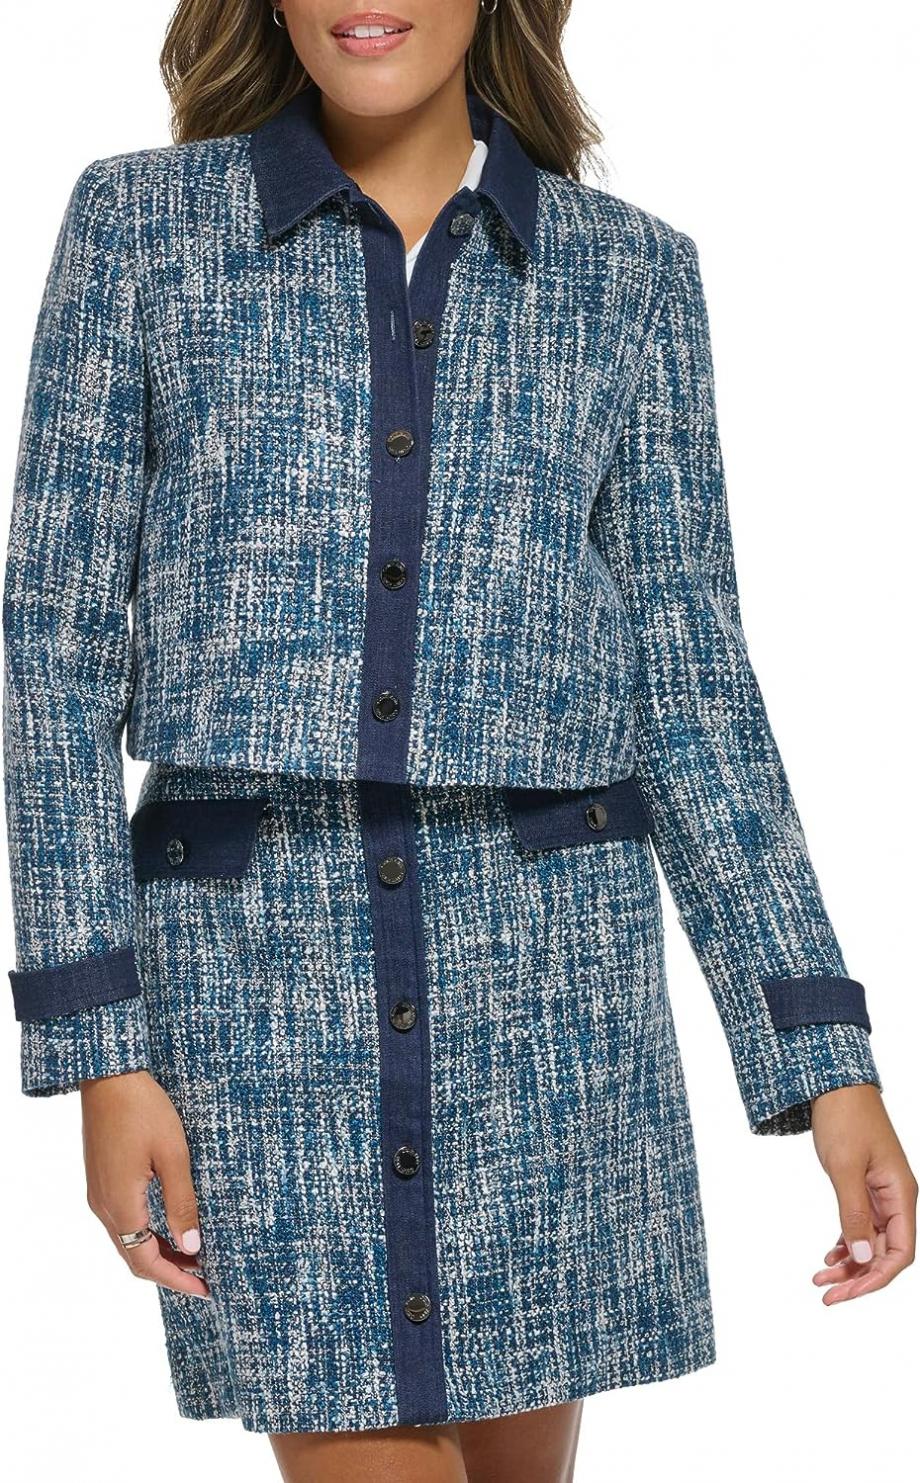 Calvin Klein Women's Denim Trim Suits Blazer